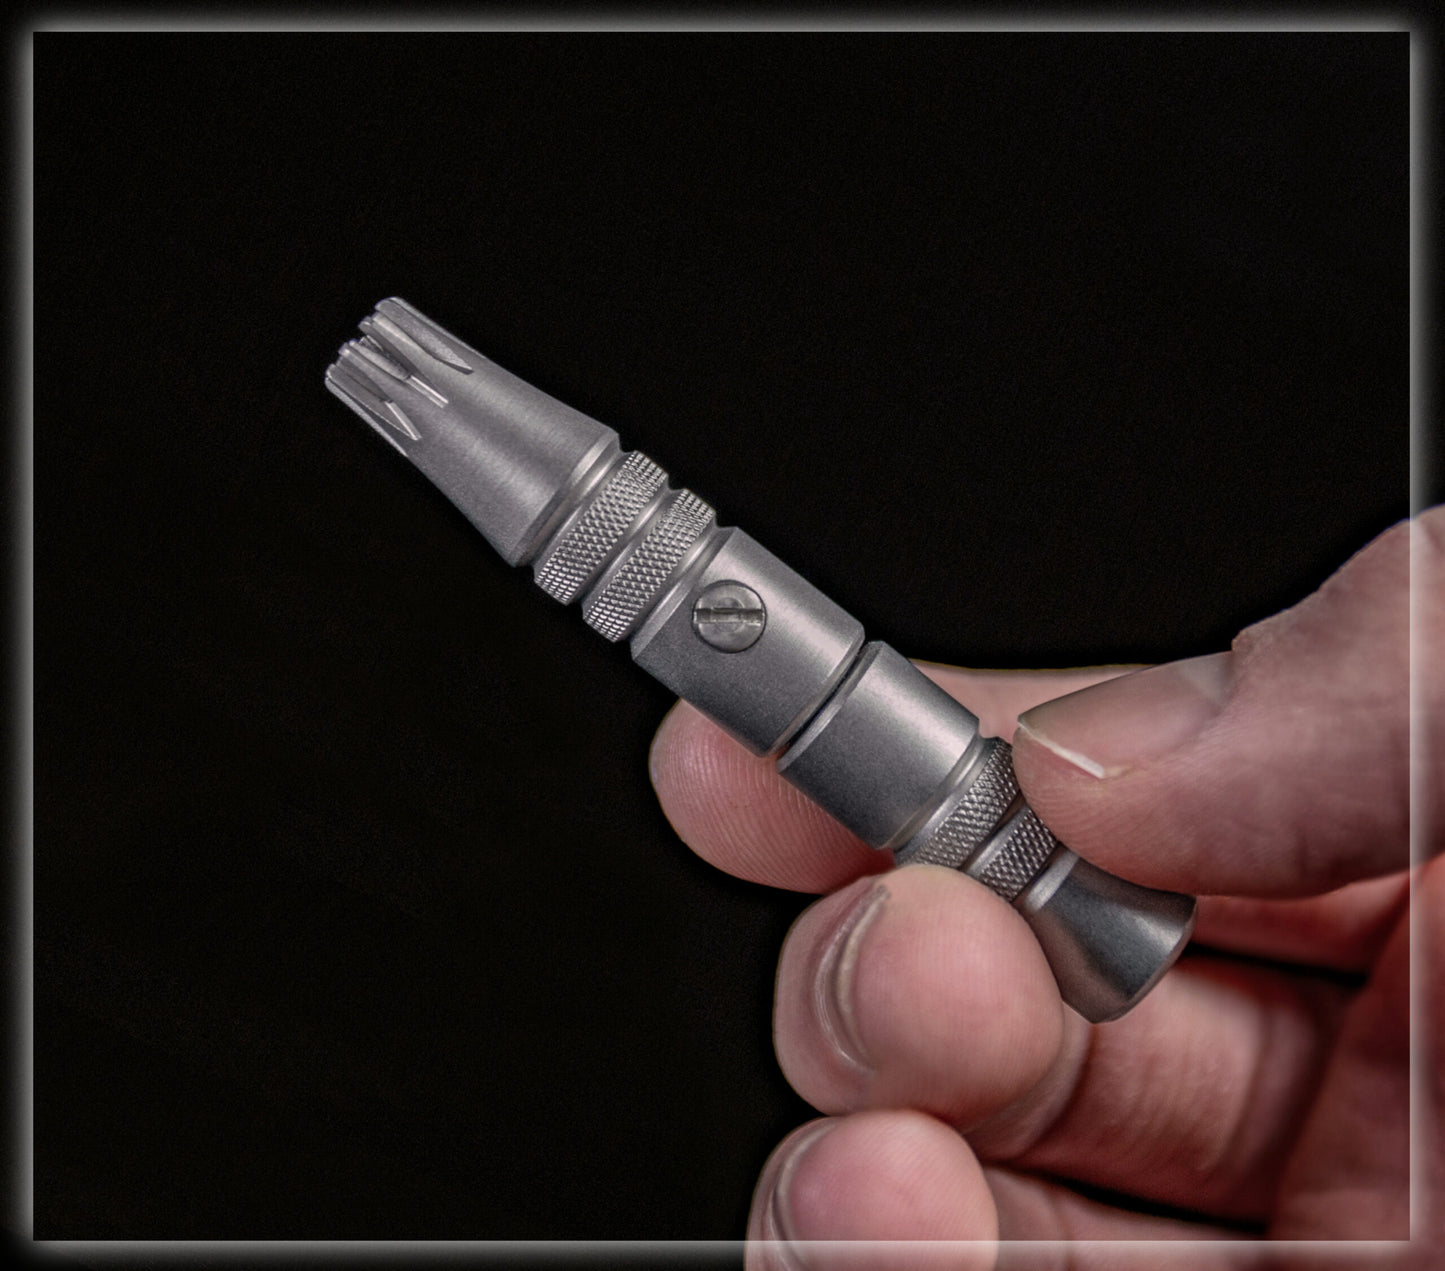 美國製 Groom Mate Platinum XL 免電超利修鼻毛器